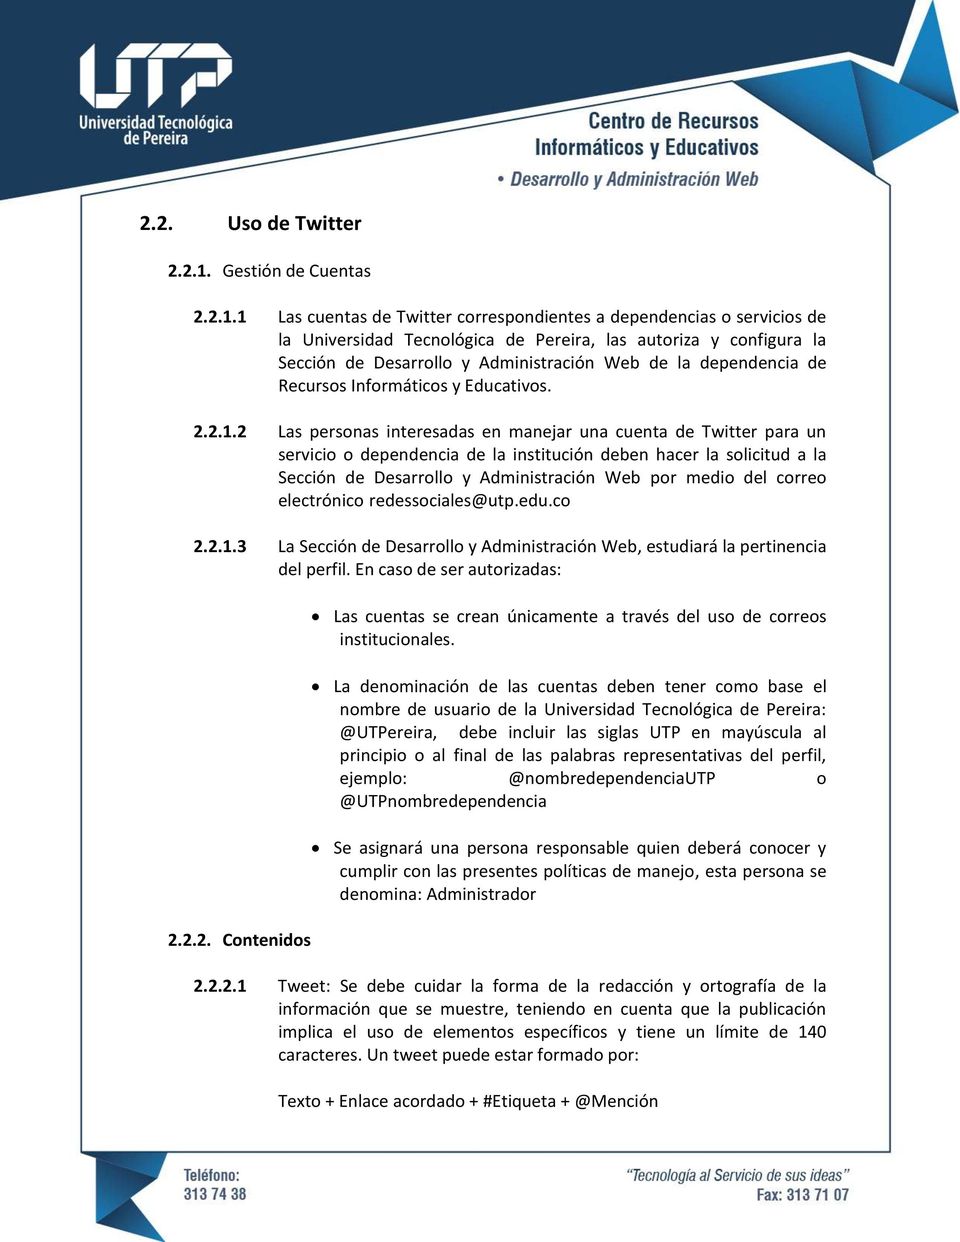 1 Las cuentas de Twitter correspondientes a dependencias o servicios de la Universidad Tecnológica de Pereira, las autoriza y configura la Sección de Desarrollo y Administración Web de la dependencia